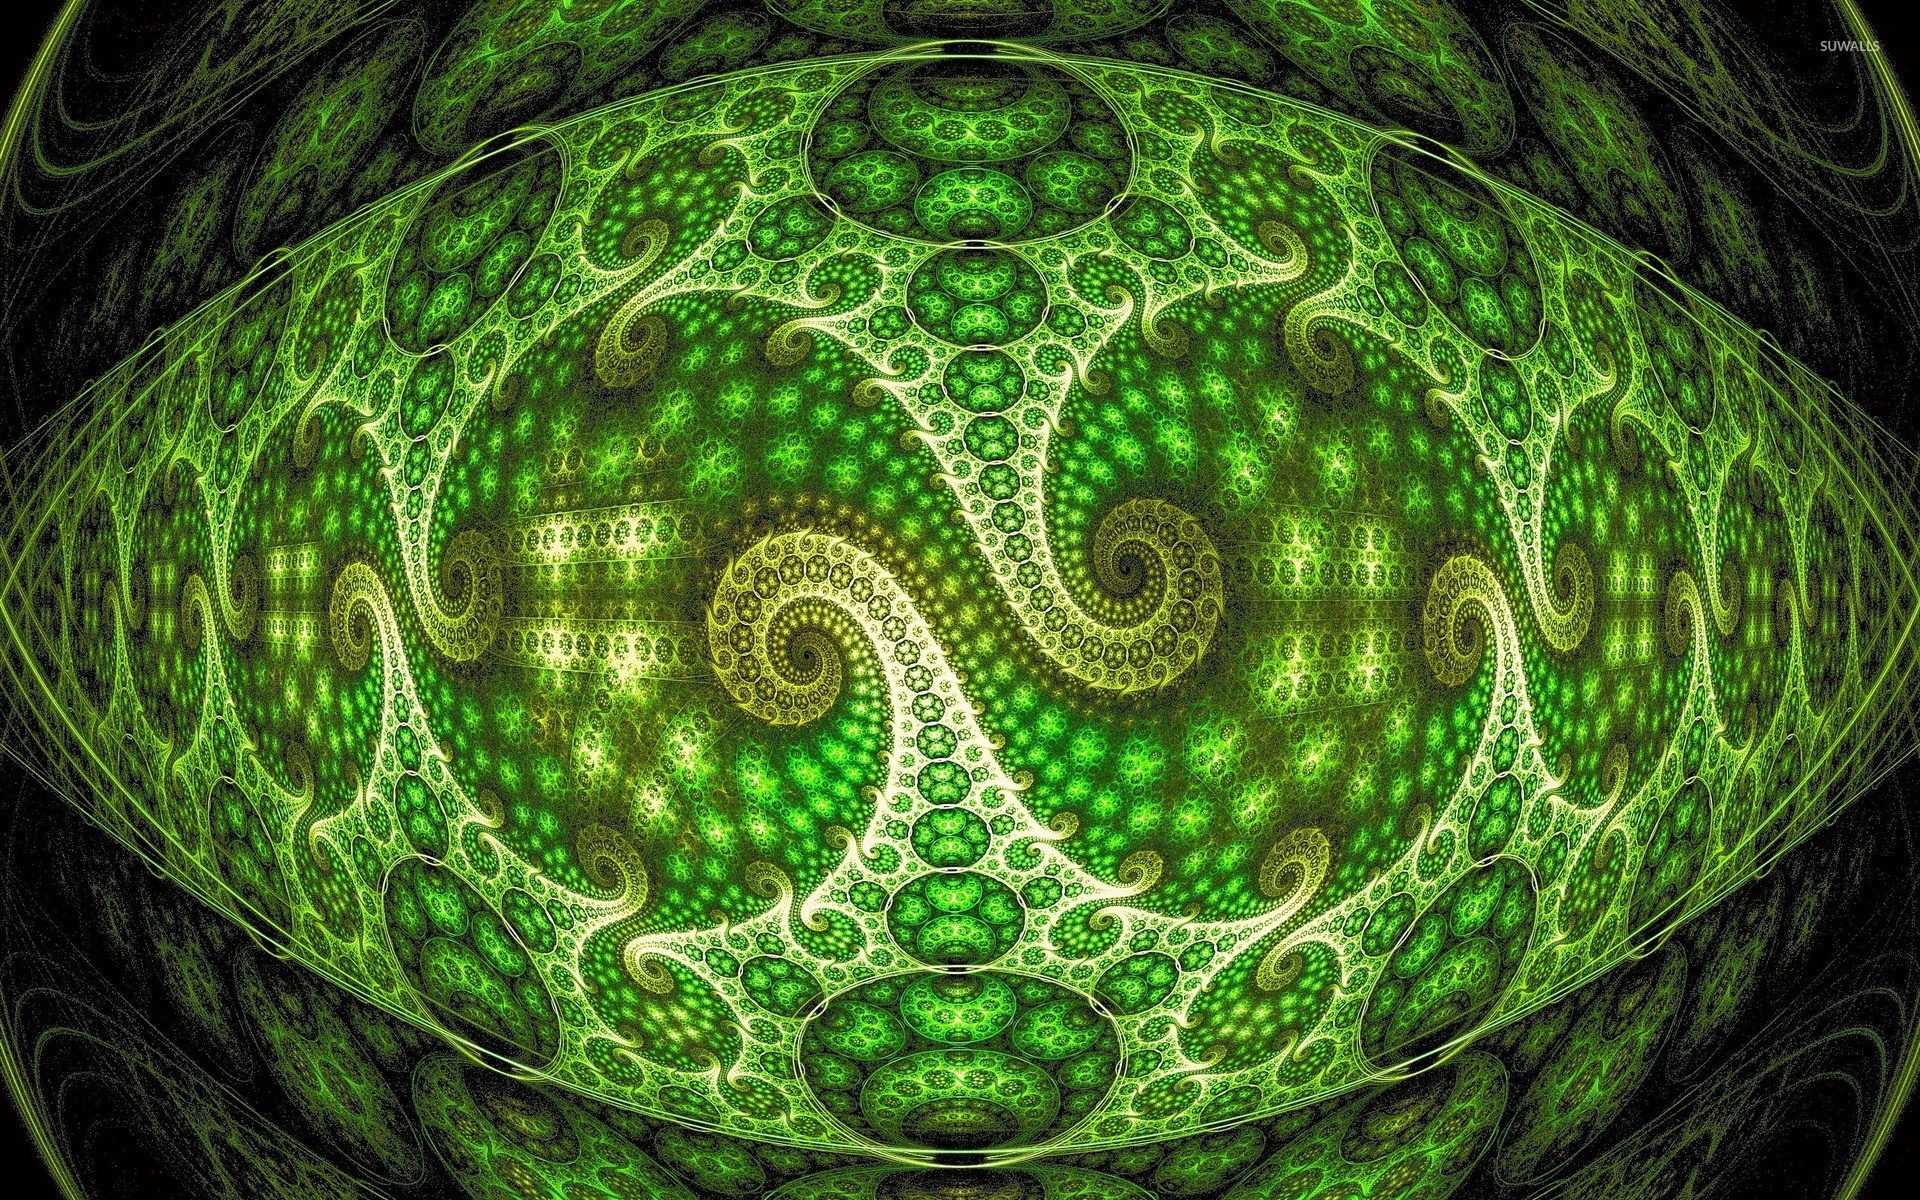 fractal verde green tantra tantapress inciensoshop blog de tantra Shivaismo de cachemira advaita Vedanta y espiritualidad hindu